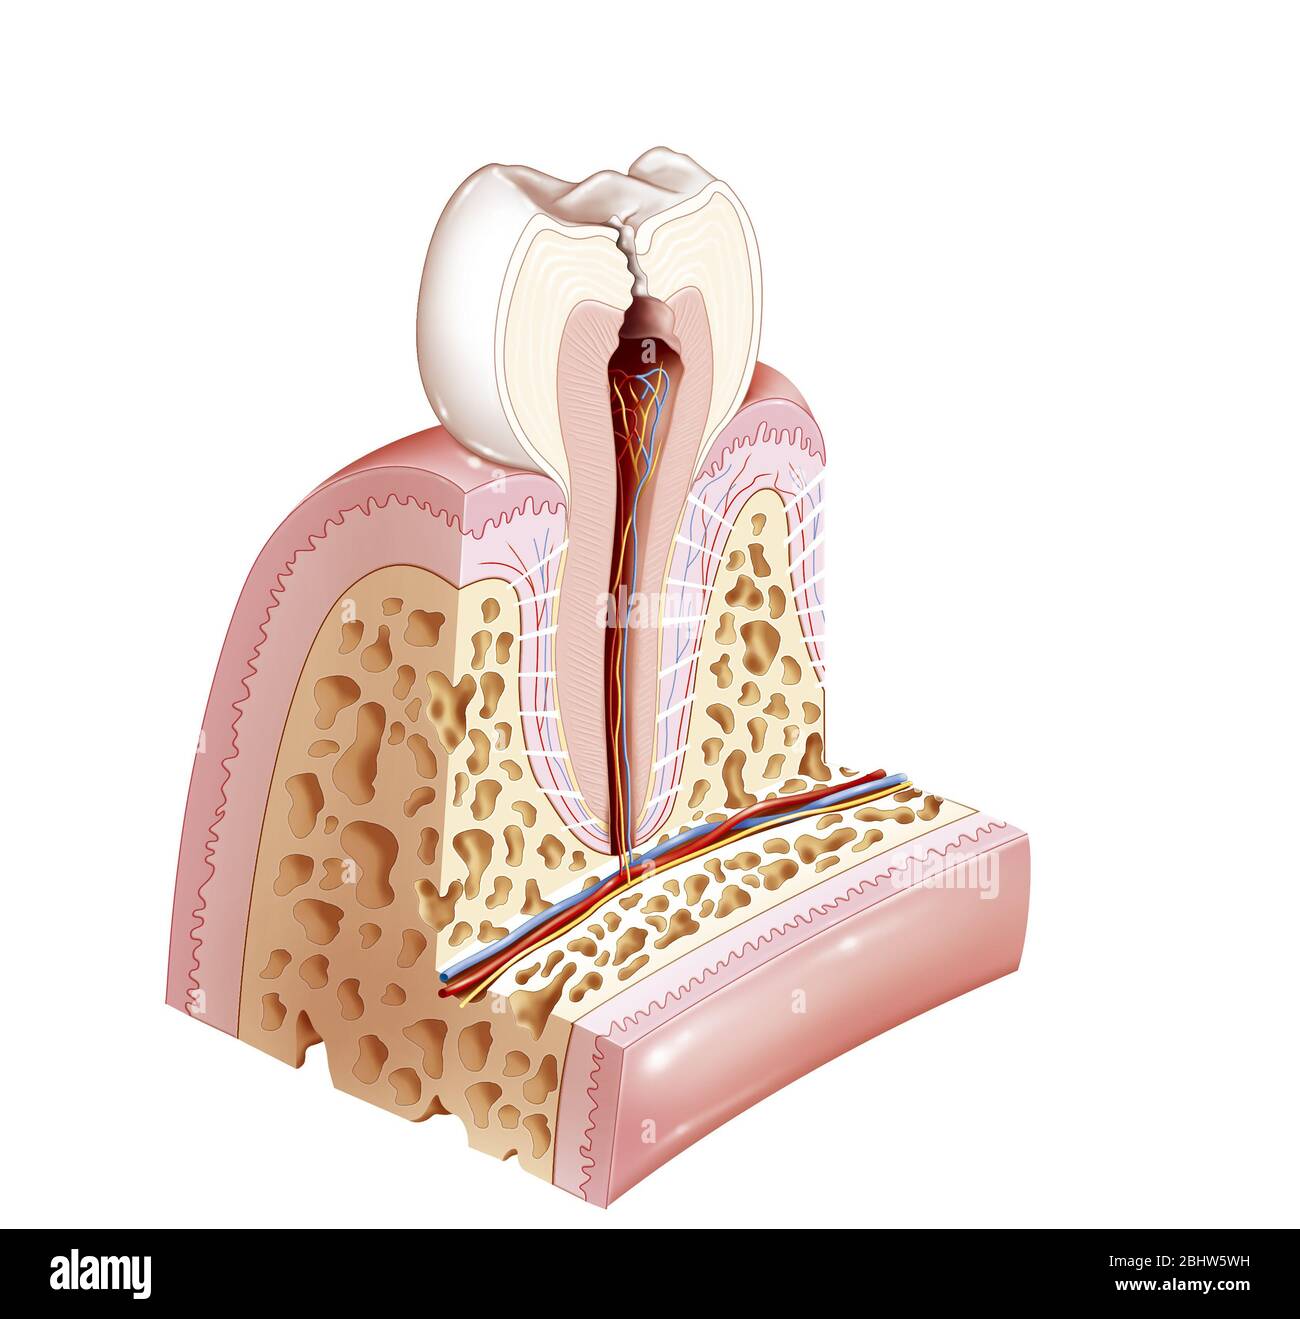 Patologia dentale con carie che raggiungono la polpa. La polpa è la zona centrale del dente, l'endodont. Qui è mostrata in marrone rossiccio. È als Foto Stock